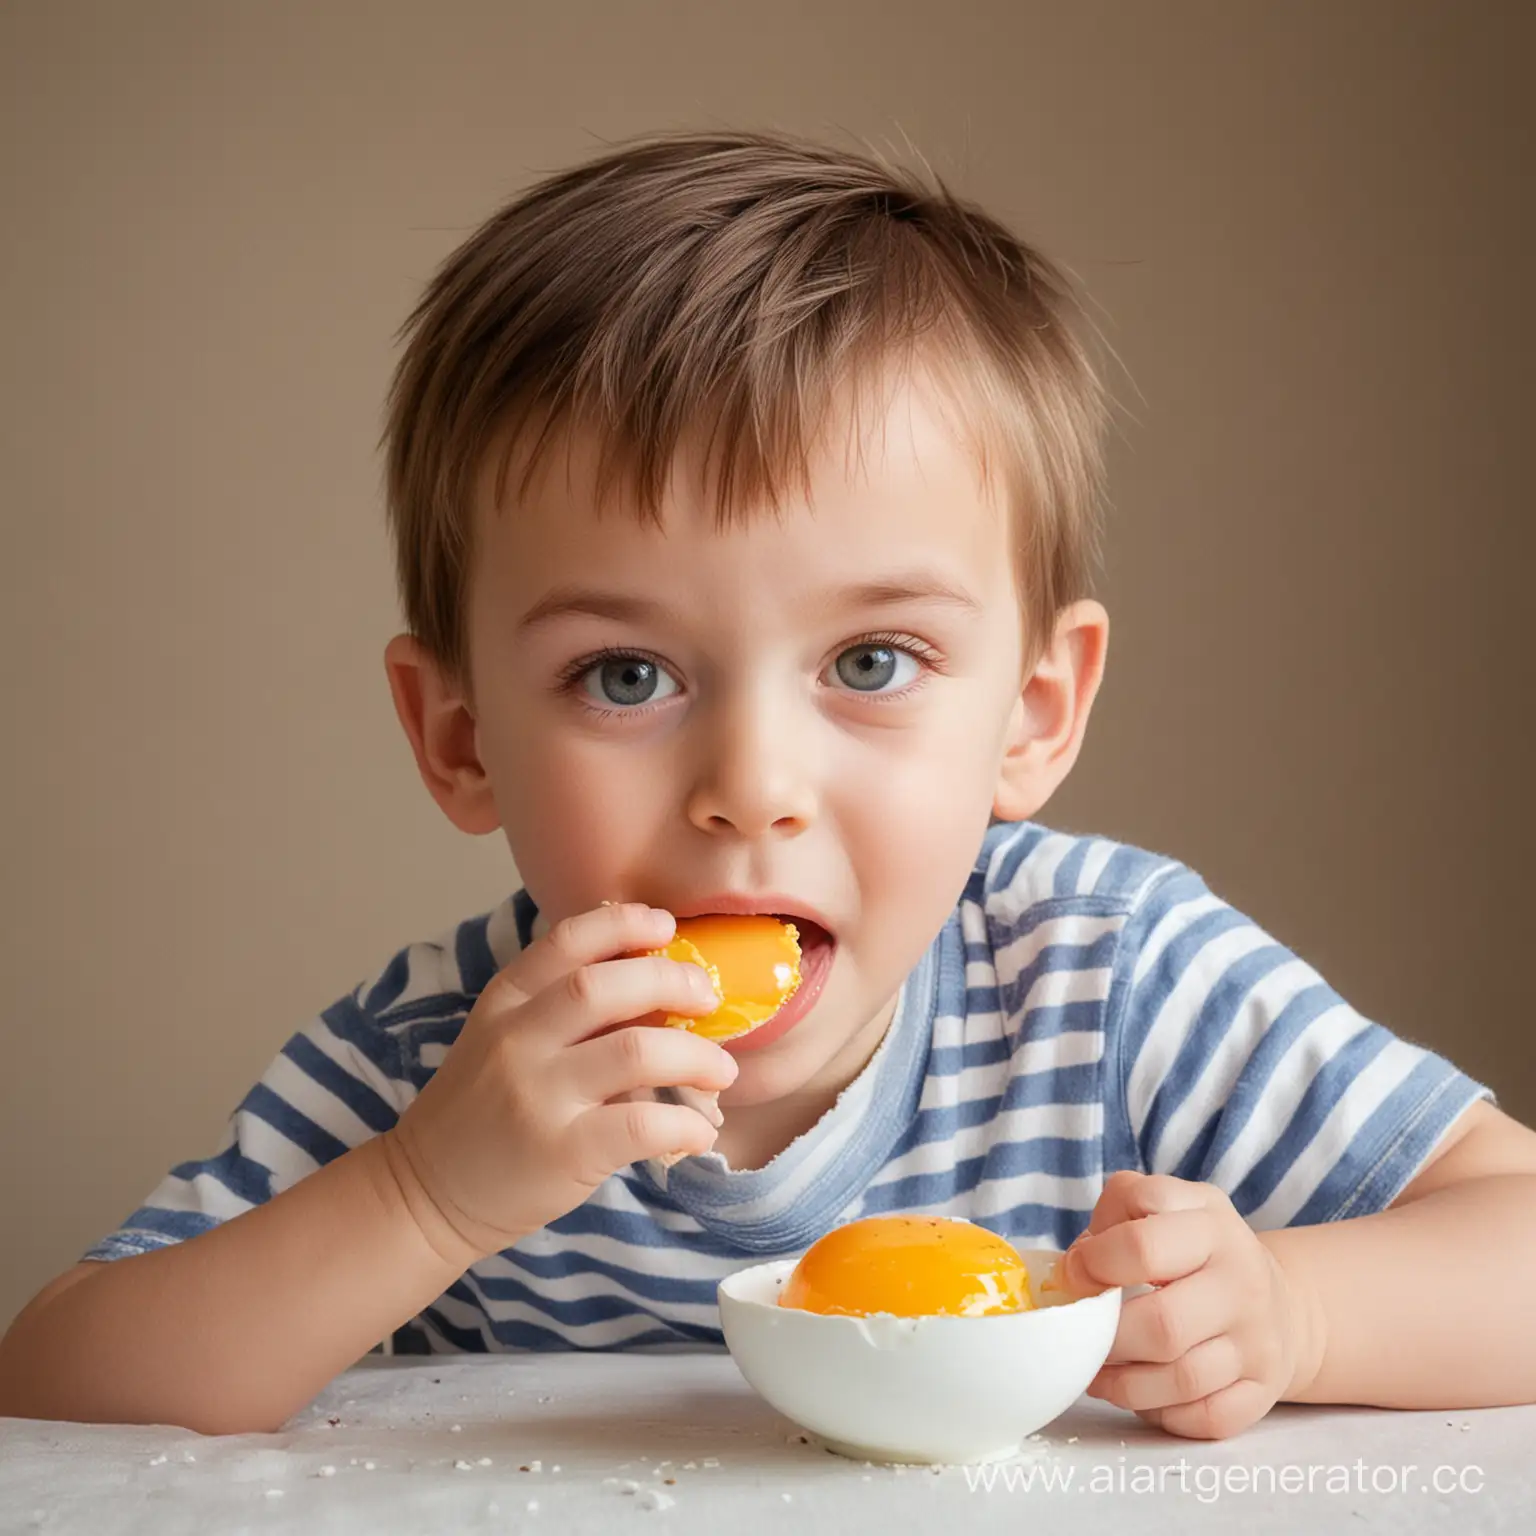 Young-Boy-Enjoying-a-Delicious-Egg-Snack